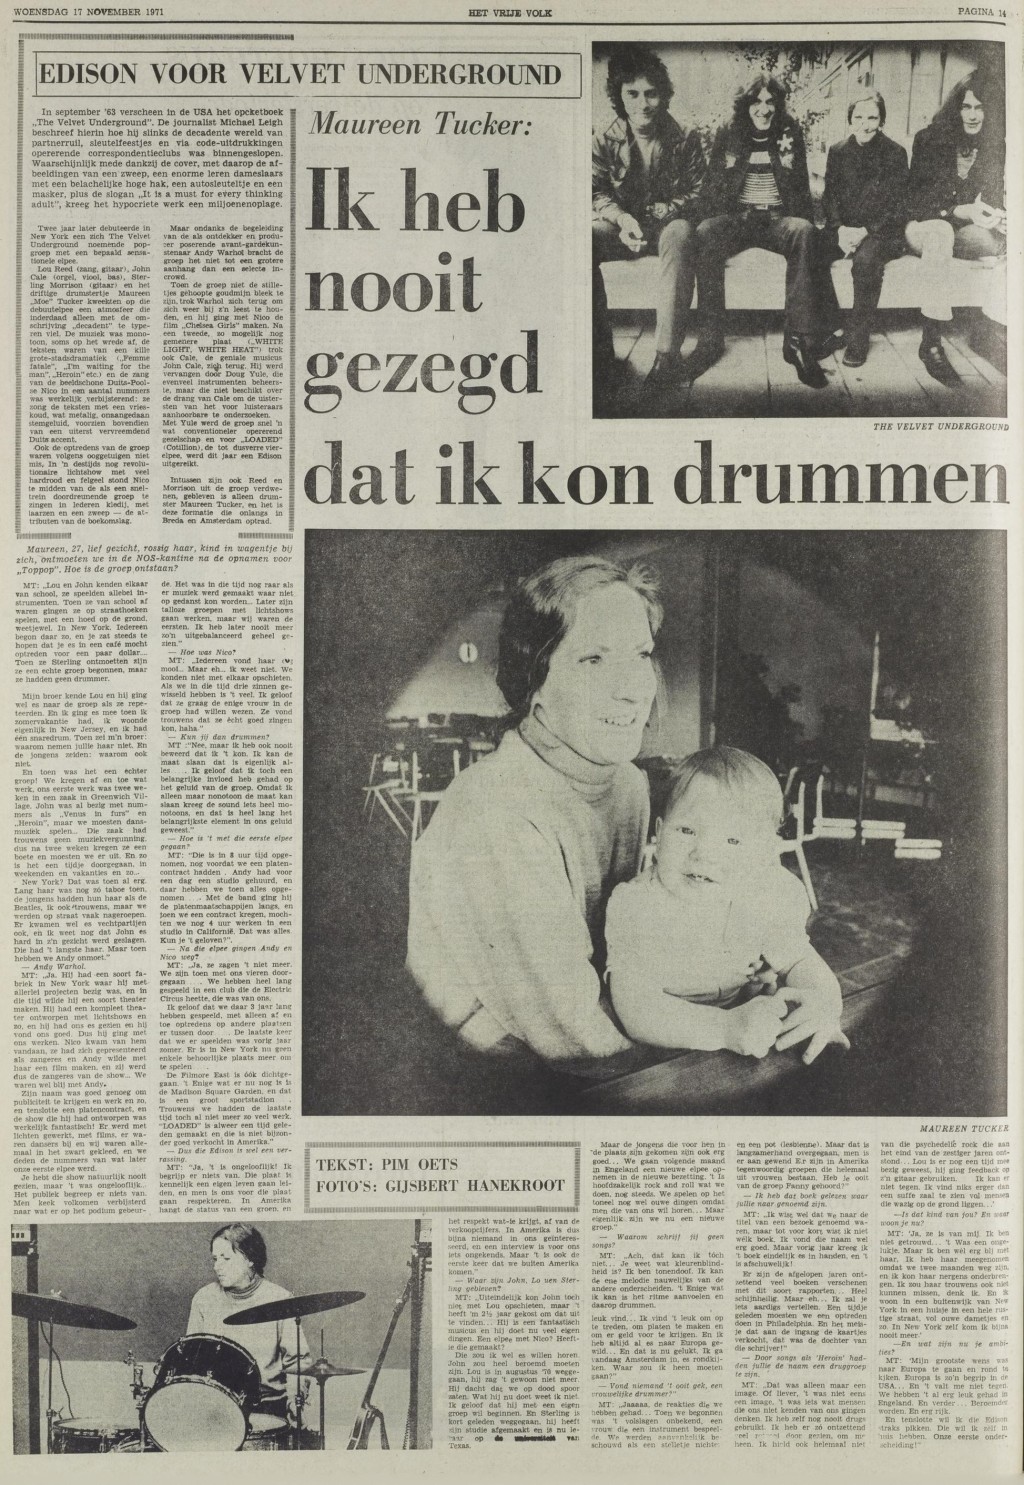 Maureen Tucker of The Velvet Underground Interviewed in The Dutch Press, 1971